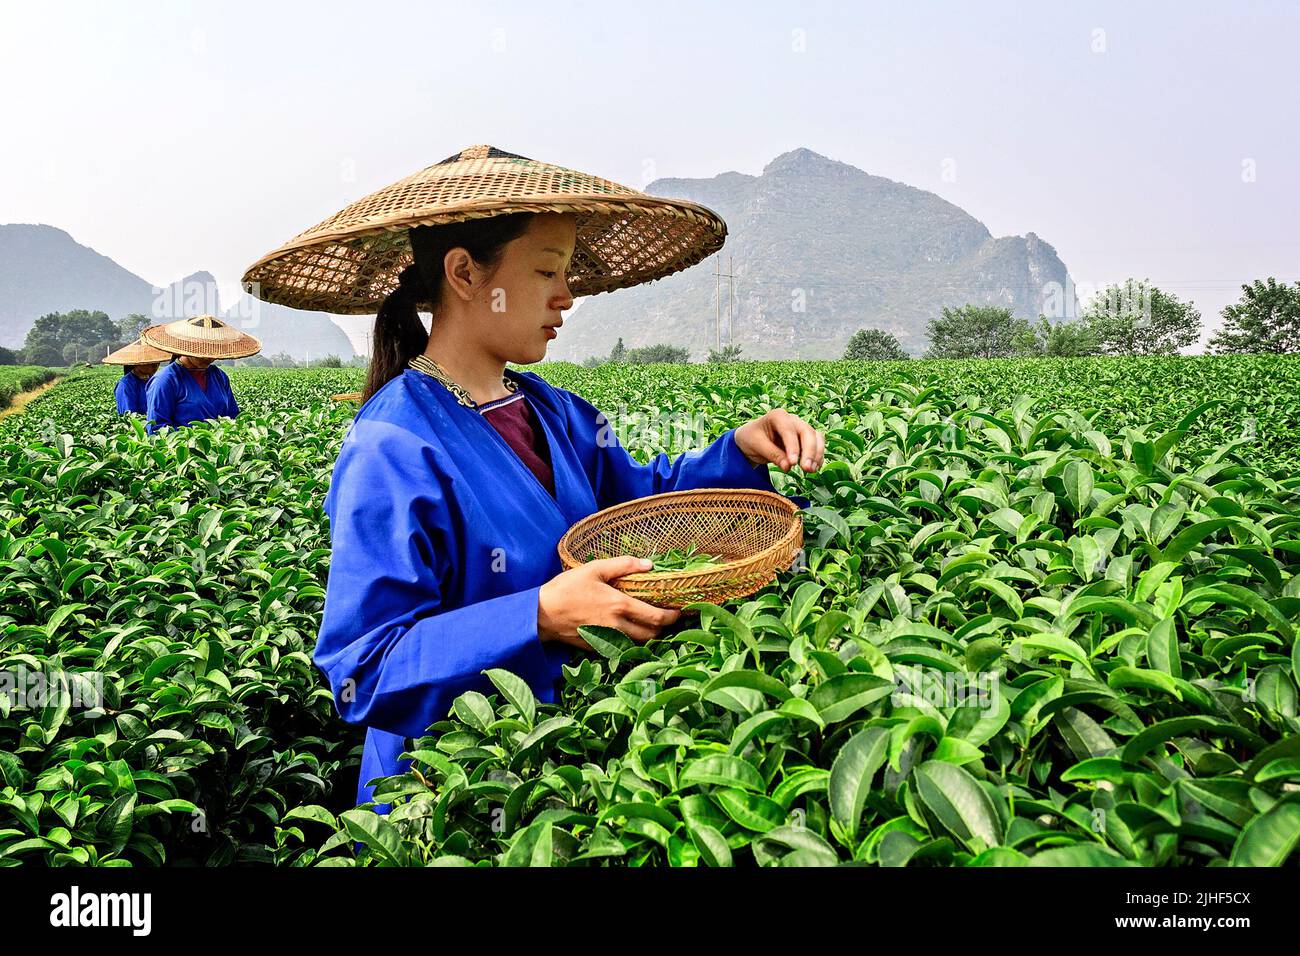 Сбор китайского чая. Чайные плантации в Китае. Чайная плантация Китай Юннань. Чайные плантации в Китае Уишань. Сбор чая на плантации в Китае.